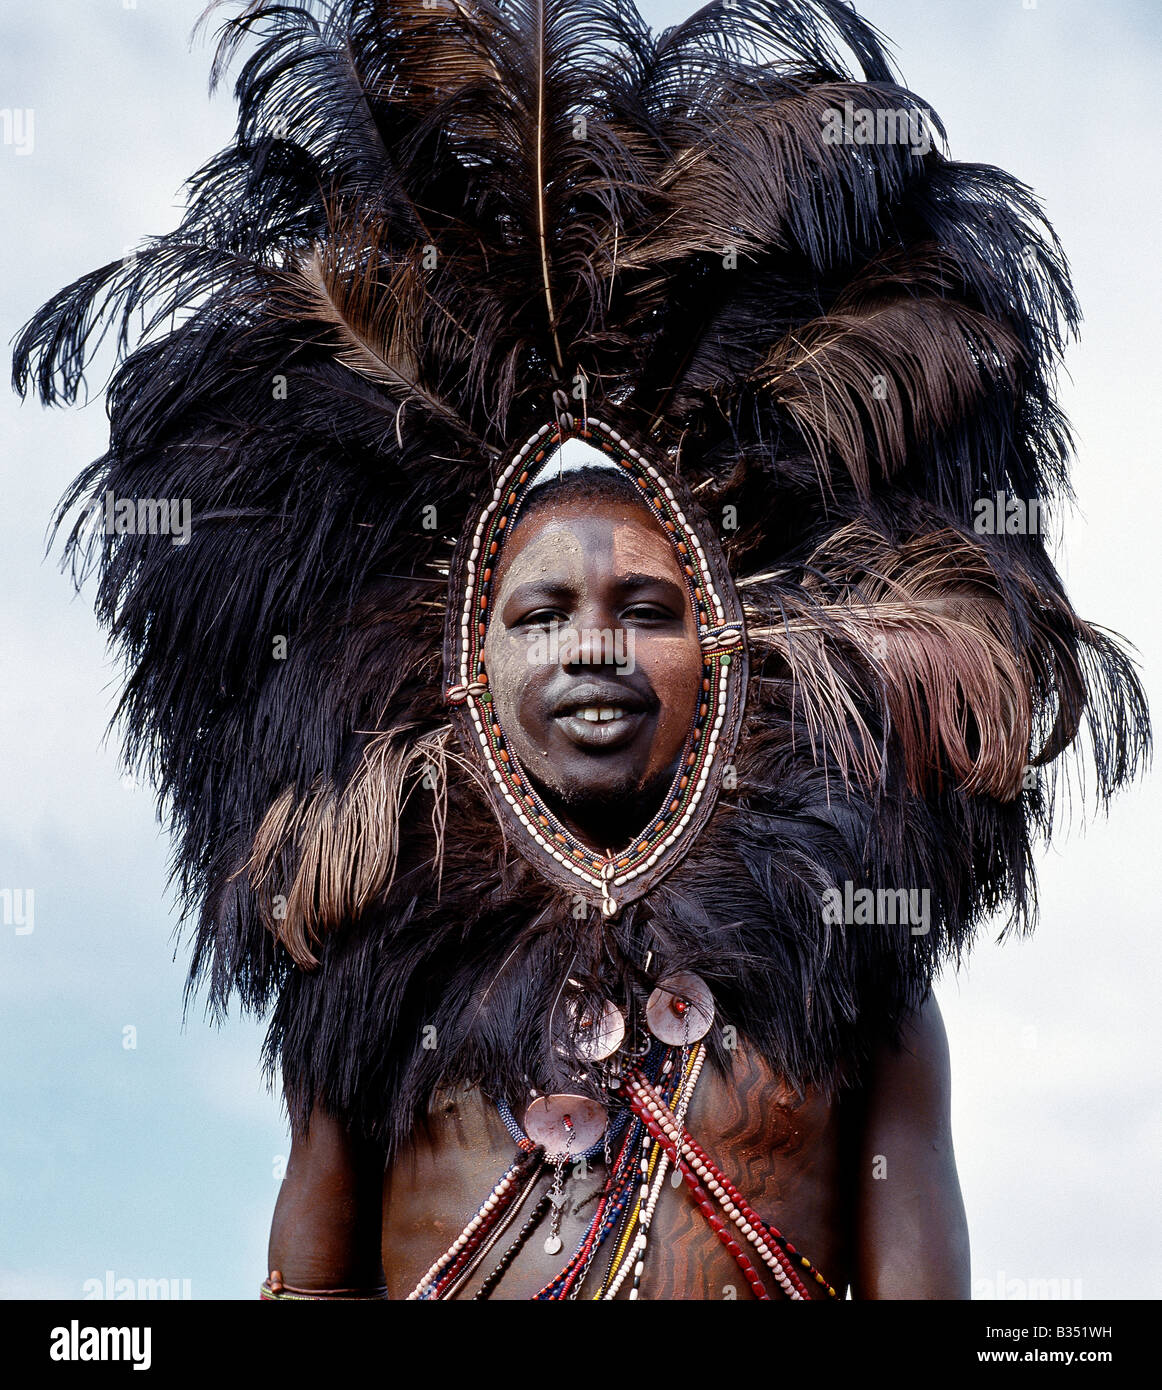 Kenya, Trans-Mara, Lolgorien. Un guerrier Masaï, son visage et corps décoré d'ocre rouge et d'argile, porte une coiffe de plumes d'autruche. Cette parure singulière a été une fois porté par les guerriers allant au combat et était probablement destiné à effrayer l'ennemi. Banque D'Images